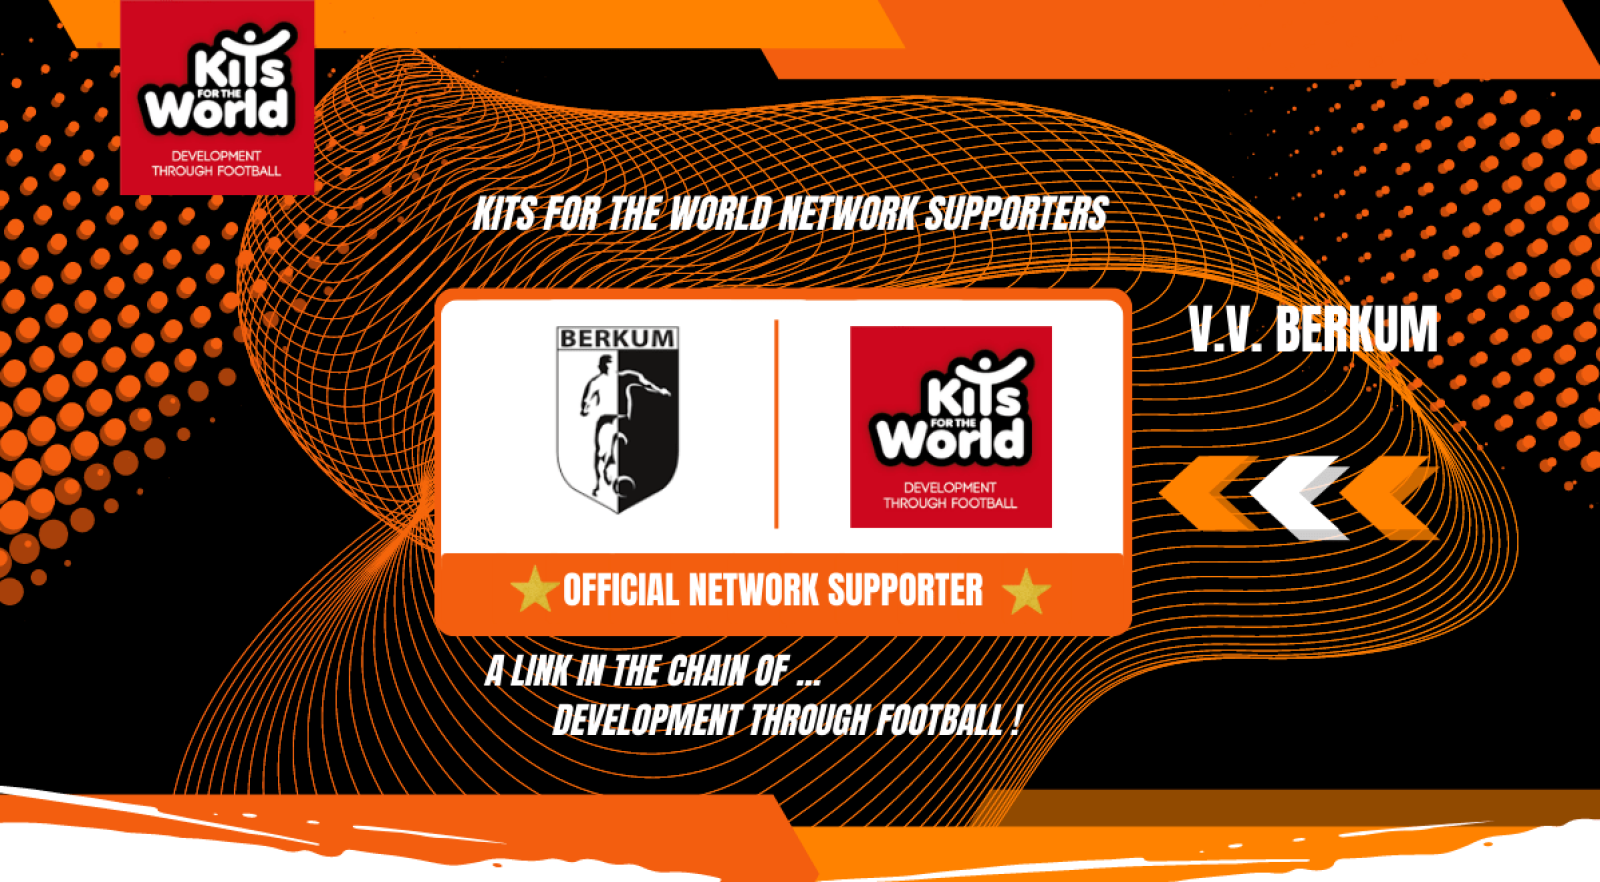 V.V. BERKUM_official NETWORK SUPPORTER _Kits for the World